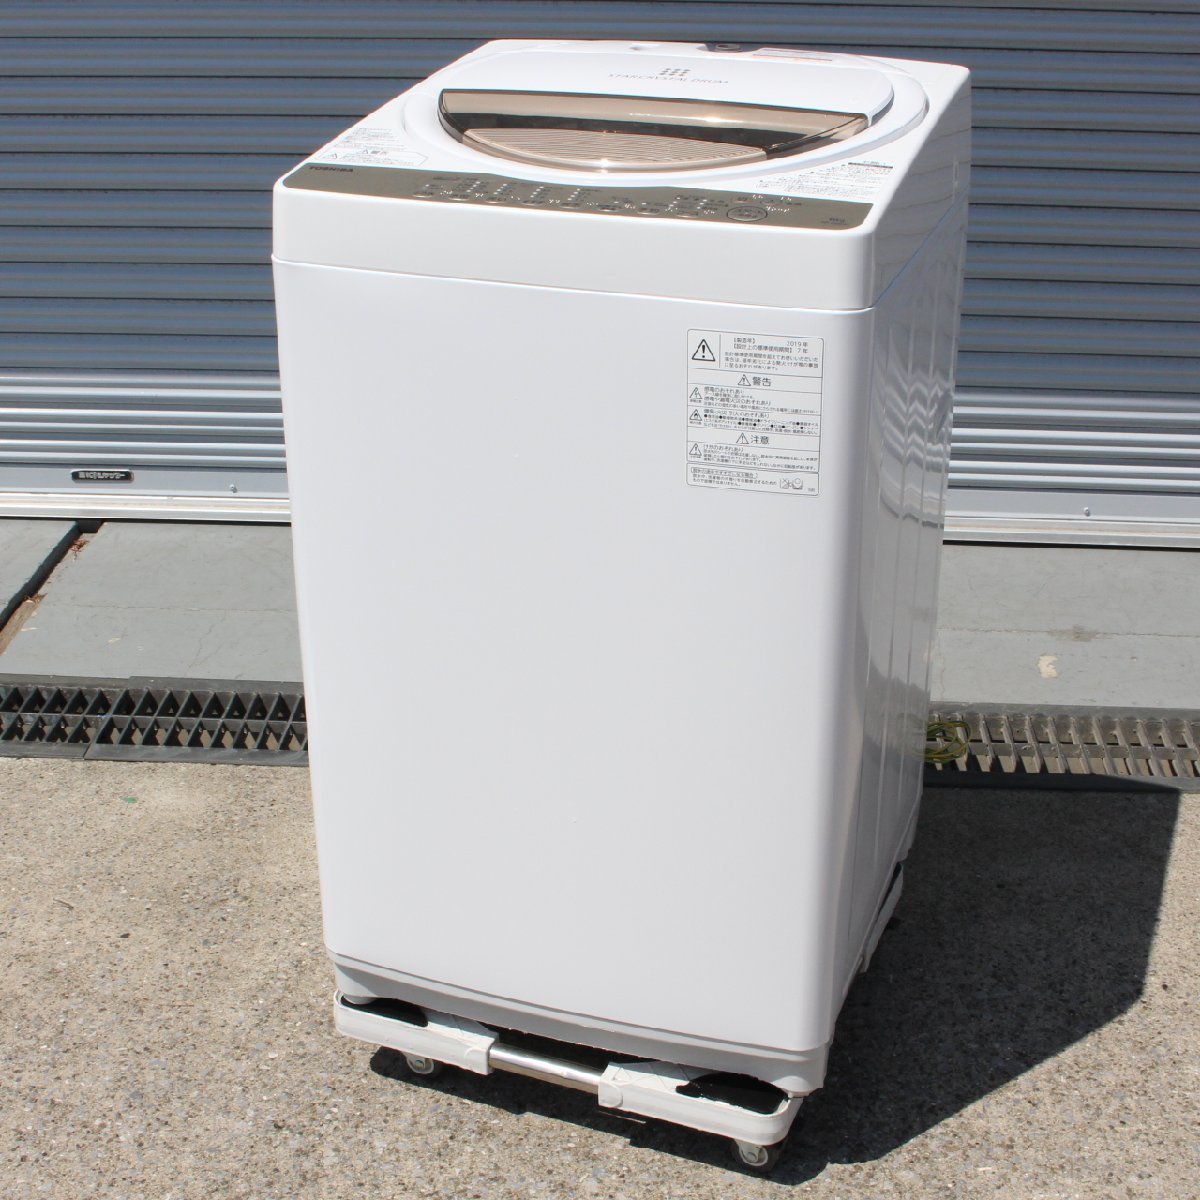 東京都武蔵野市にて 東芝 全自動洗濯機 AW-6G8 2019年製 を出張買取させて頂きました。